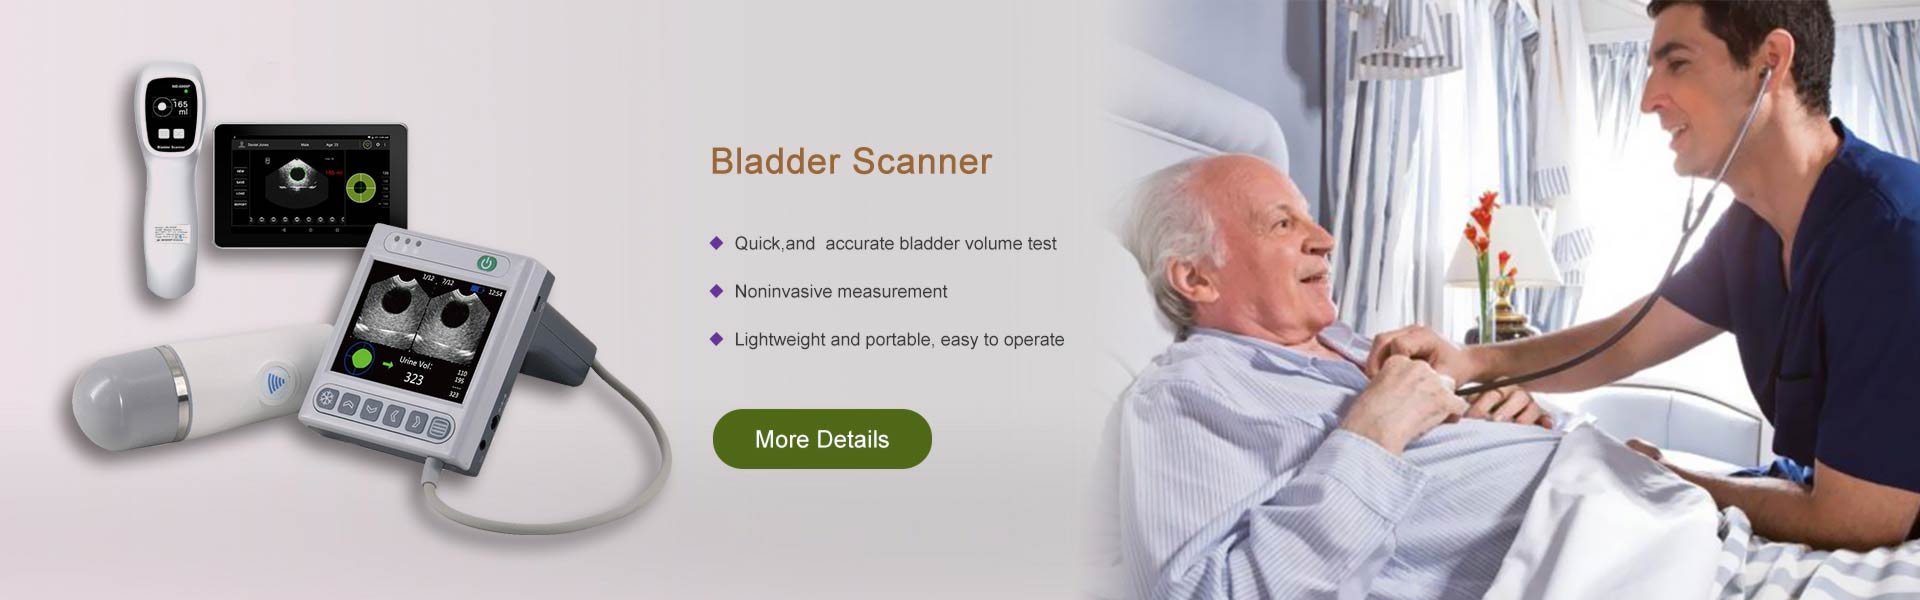 Bladder Scanners